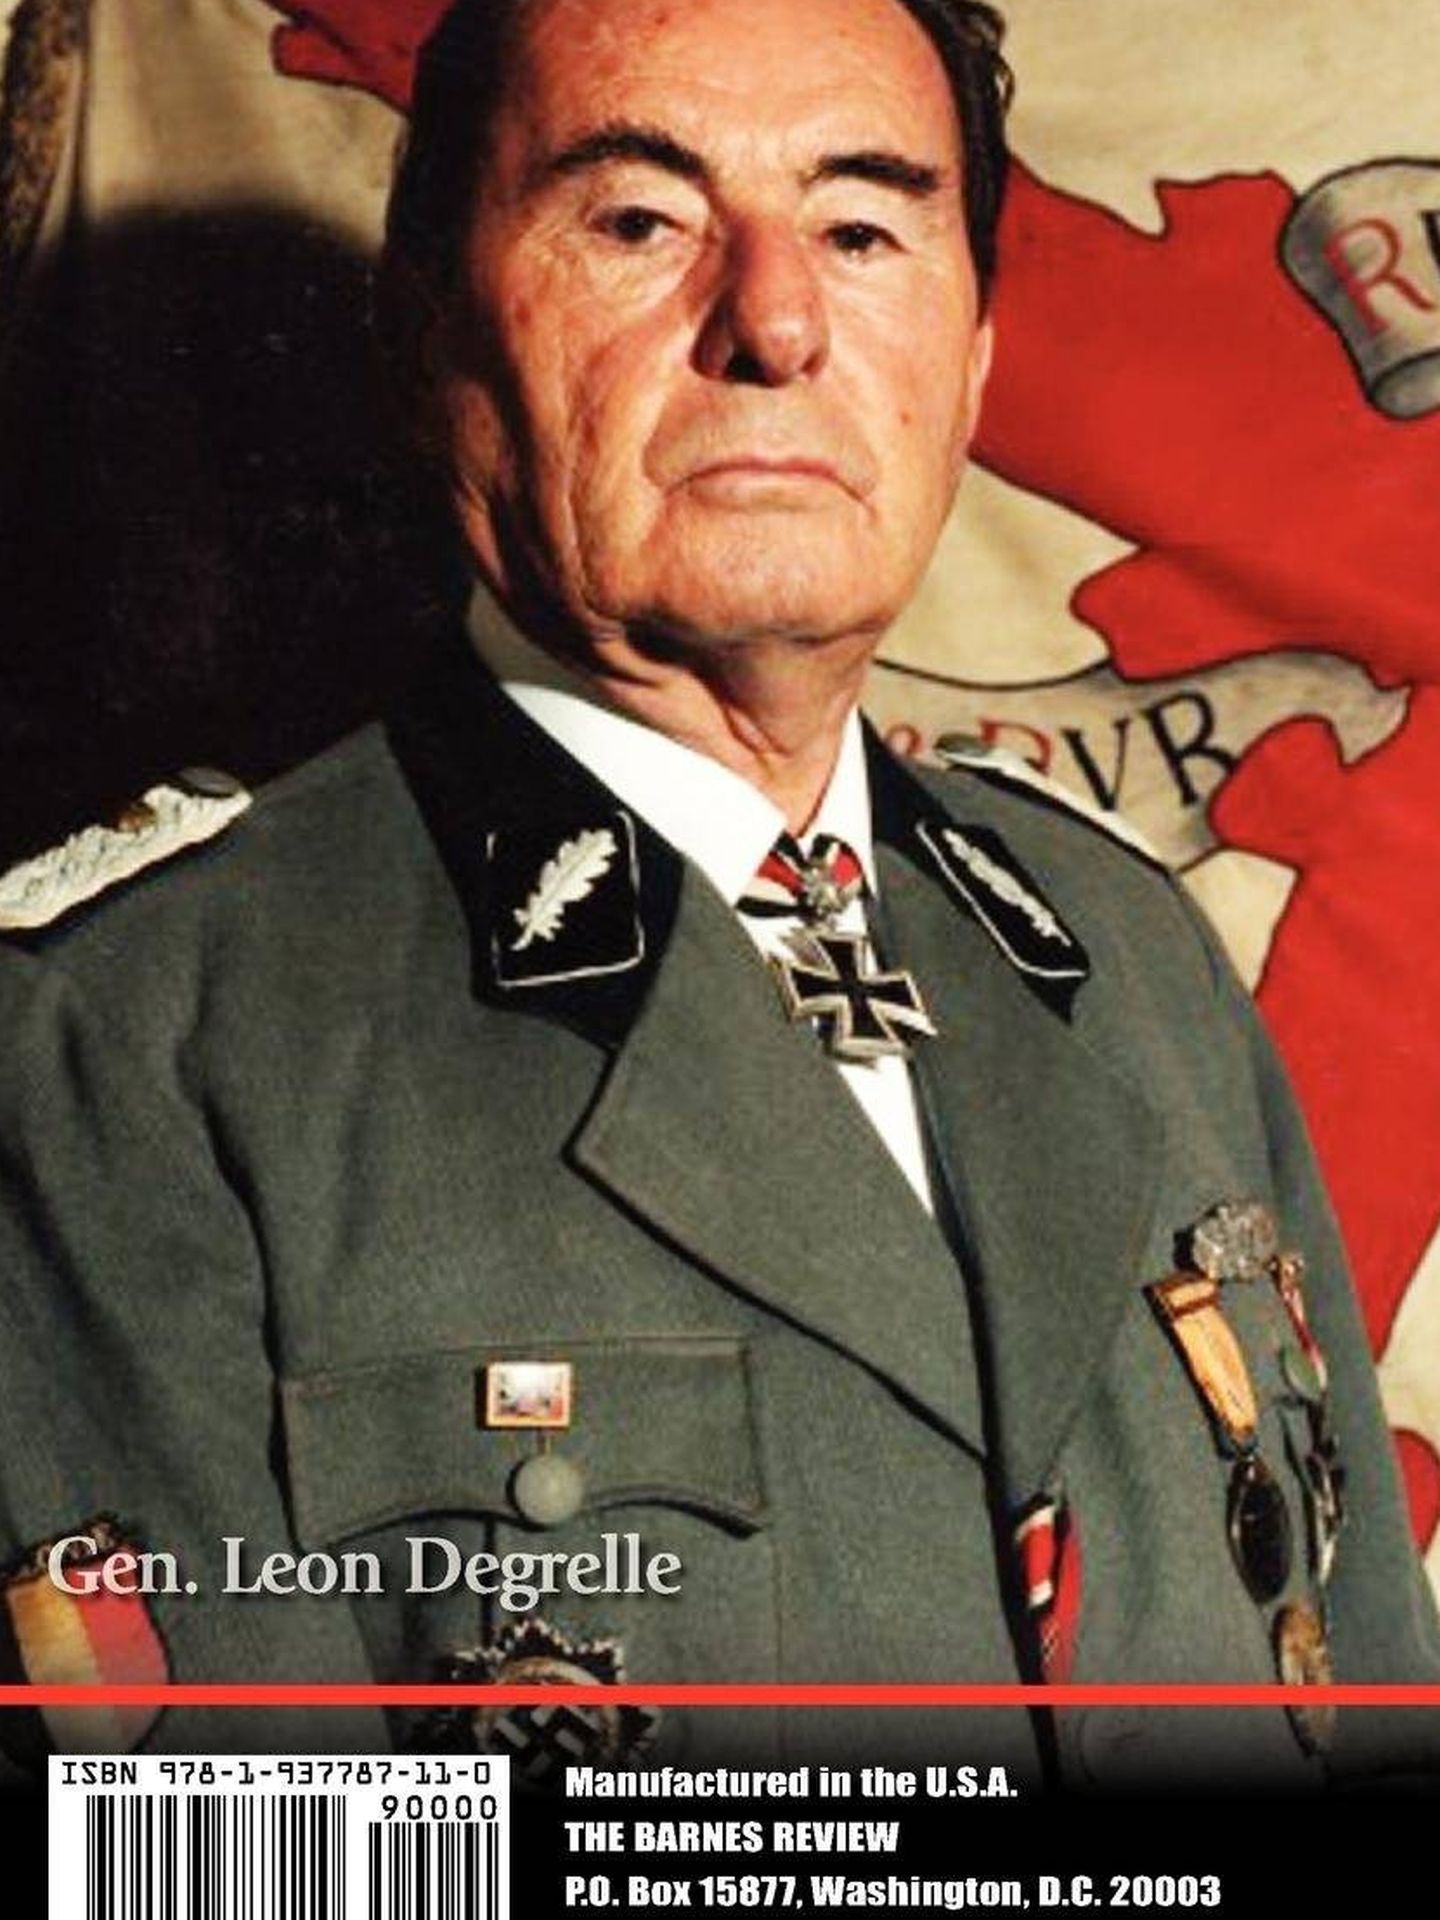 Contraportada del libro 'Hitler Democrat', con un retrato de Léon Degrelle. (The Barnes Review)